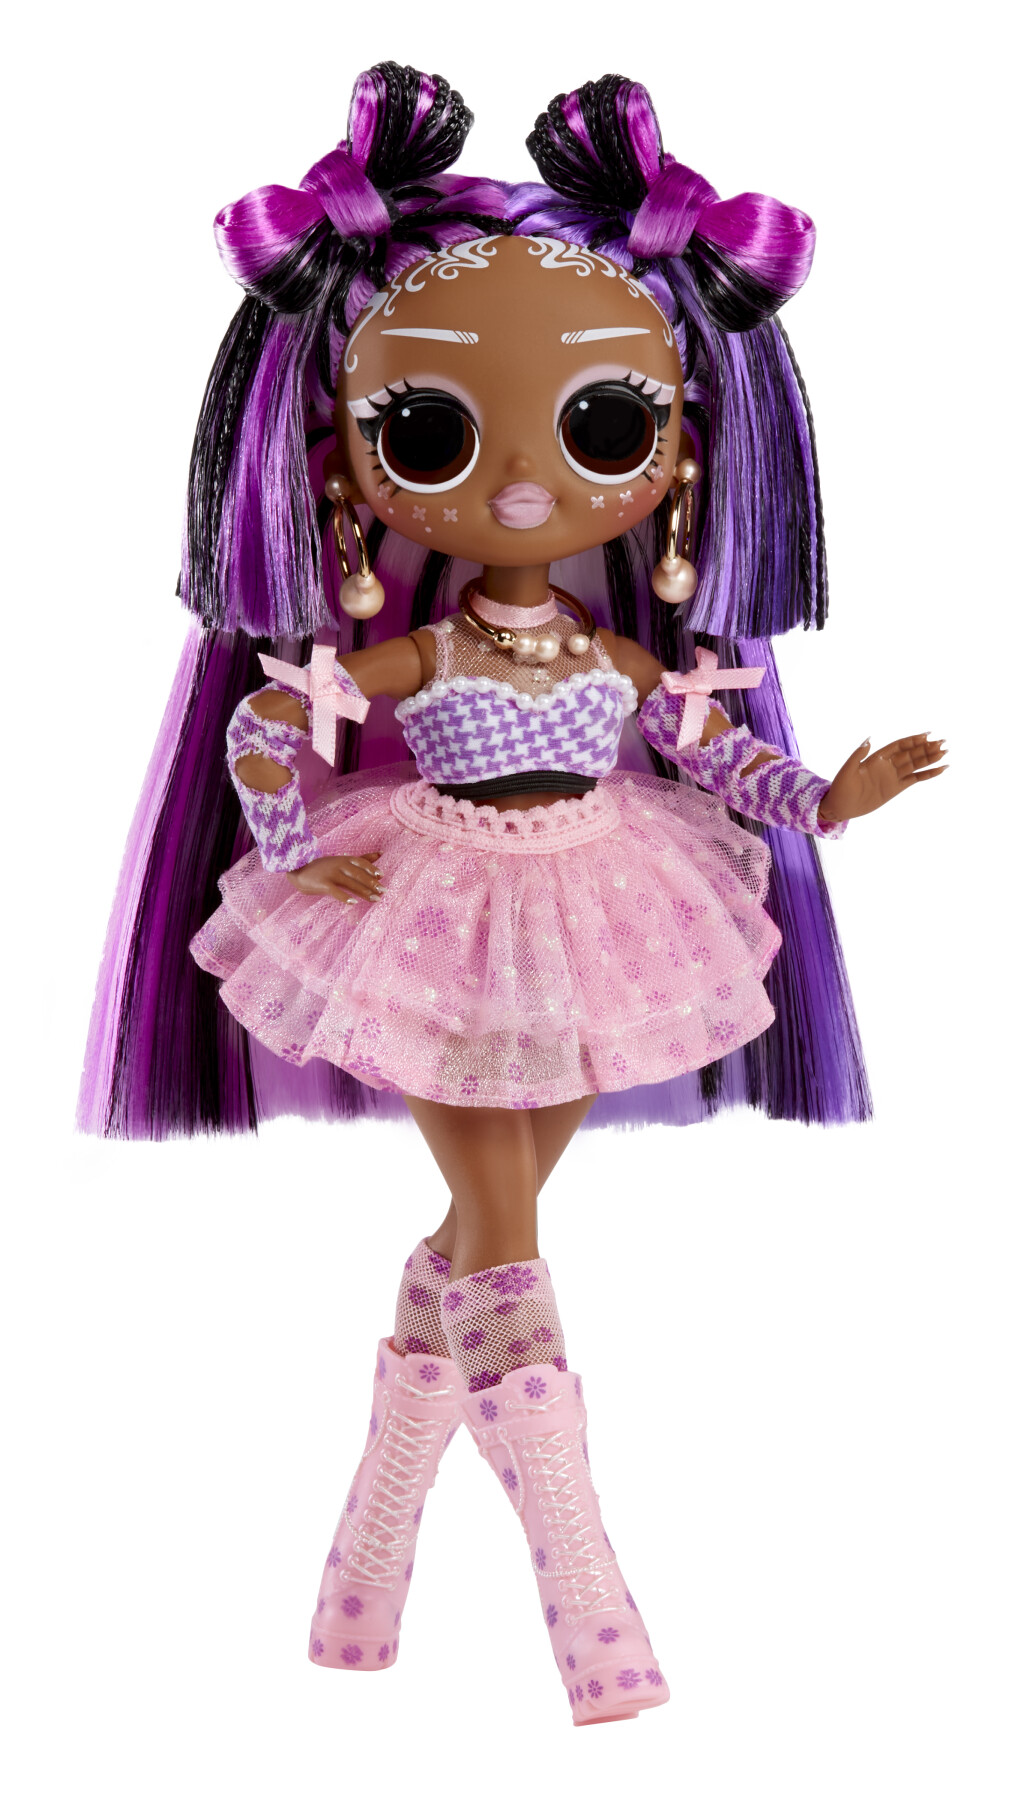 Lol surprise omg sunshine makeover fashion doll: switches. bambola cambia colore, numerose sorprese e accessori favolosi - LOL